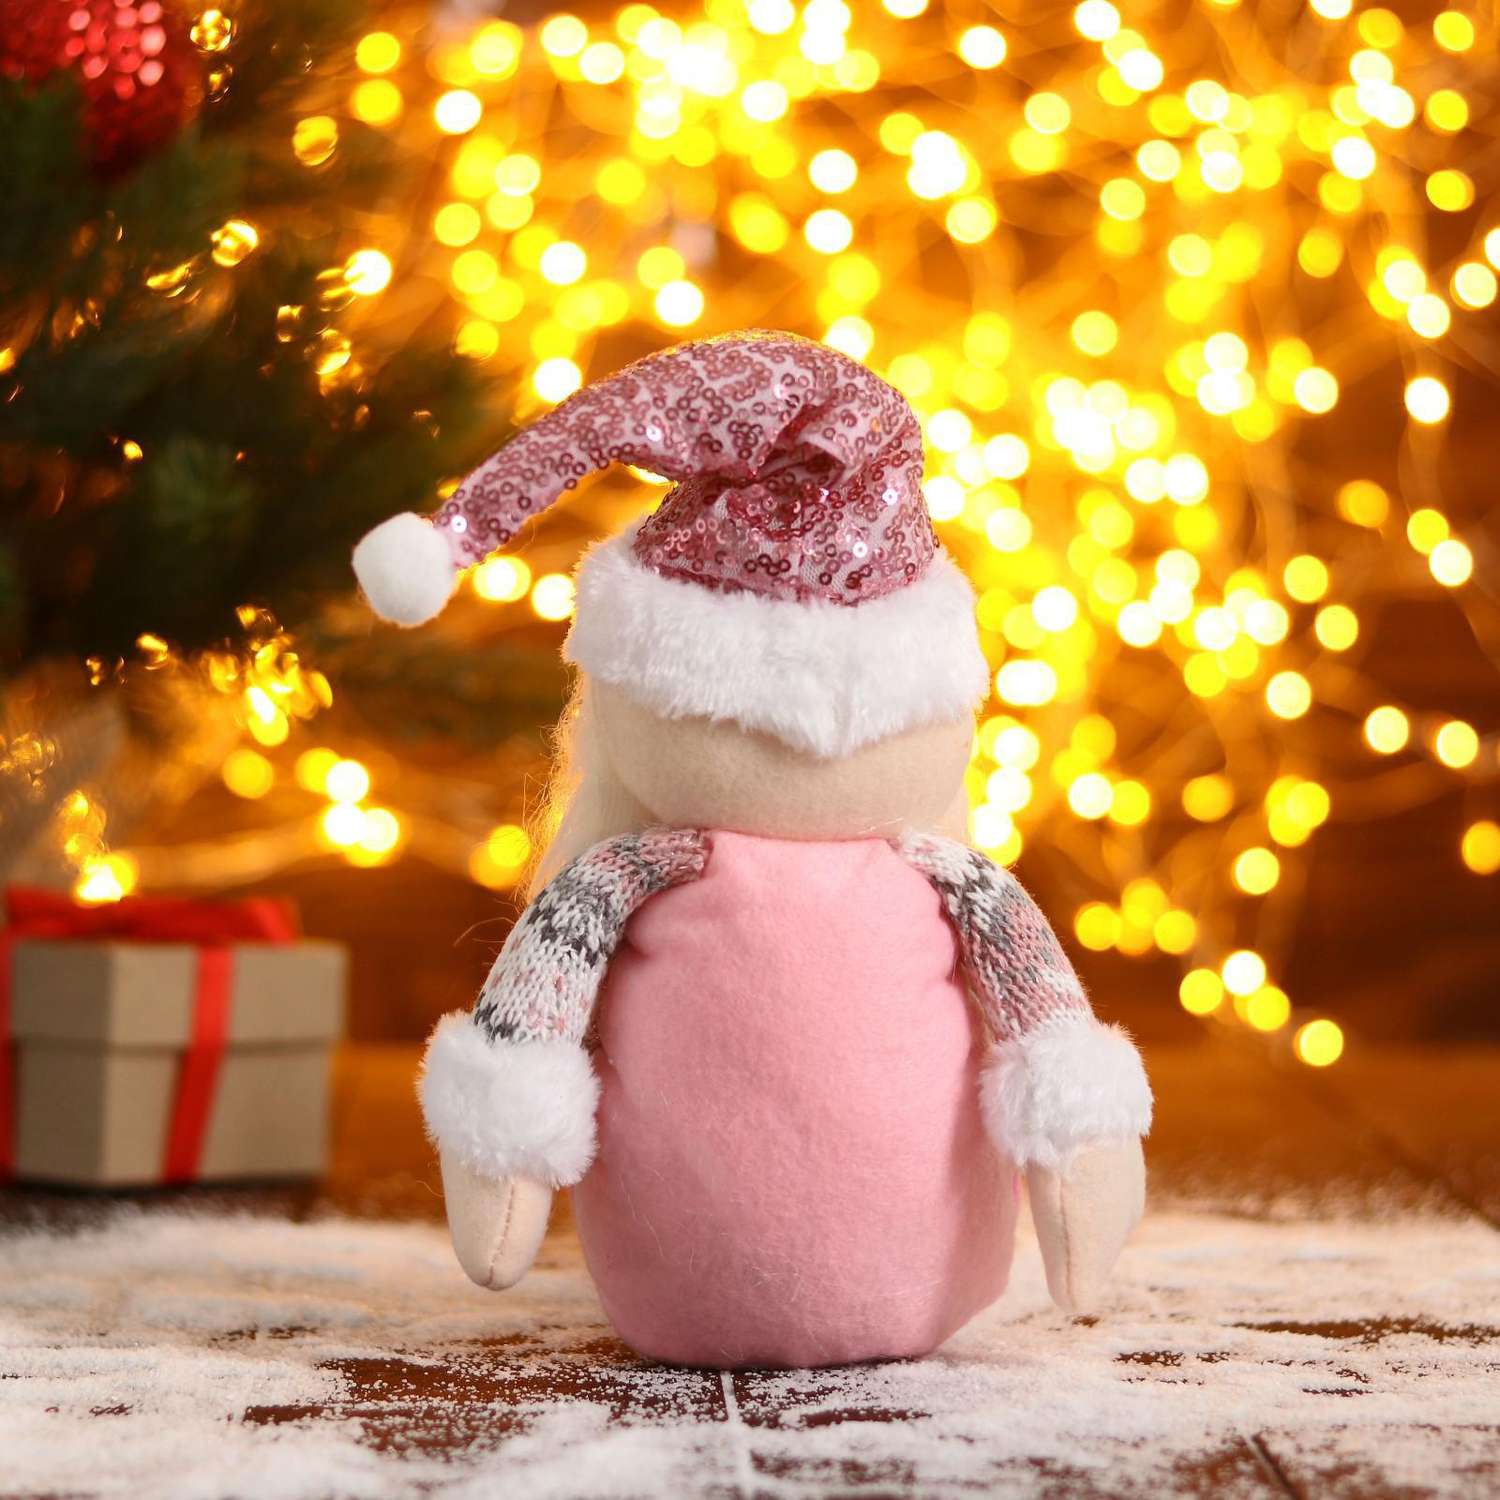 Мягкая игрушка Зимнее волшебство «Дед Мороз в розой шапочке-длинные ножки» 11х37см бело-розовый - фото 3